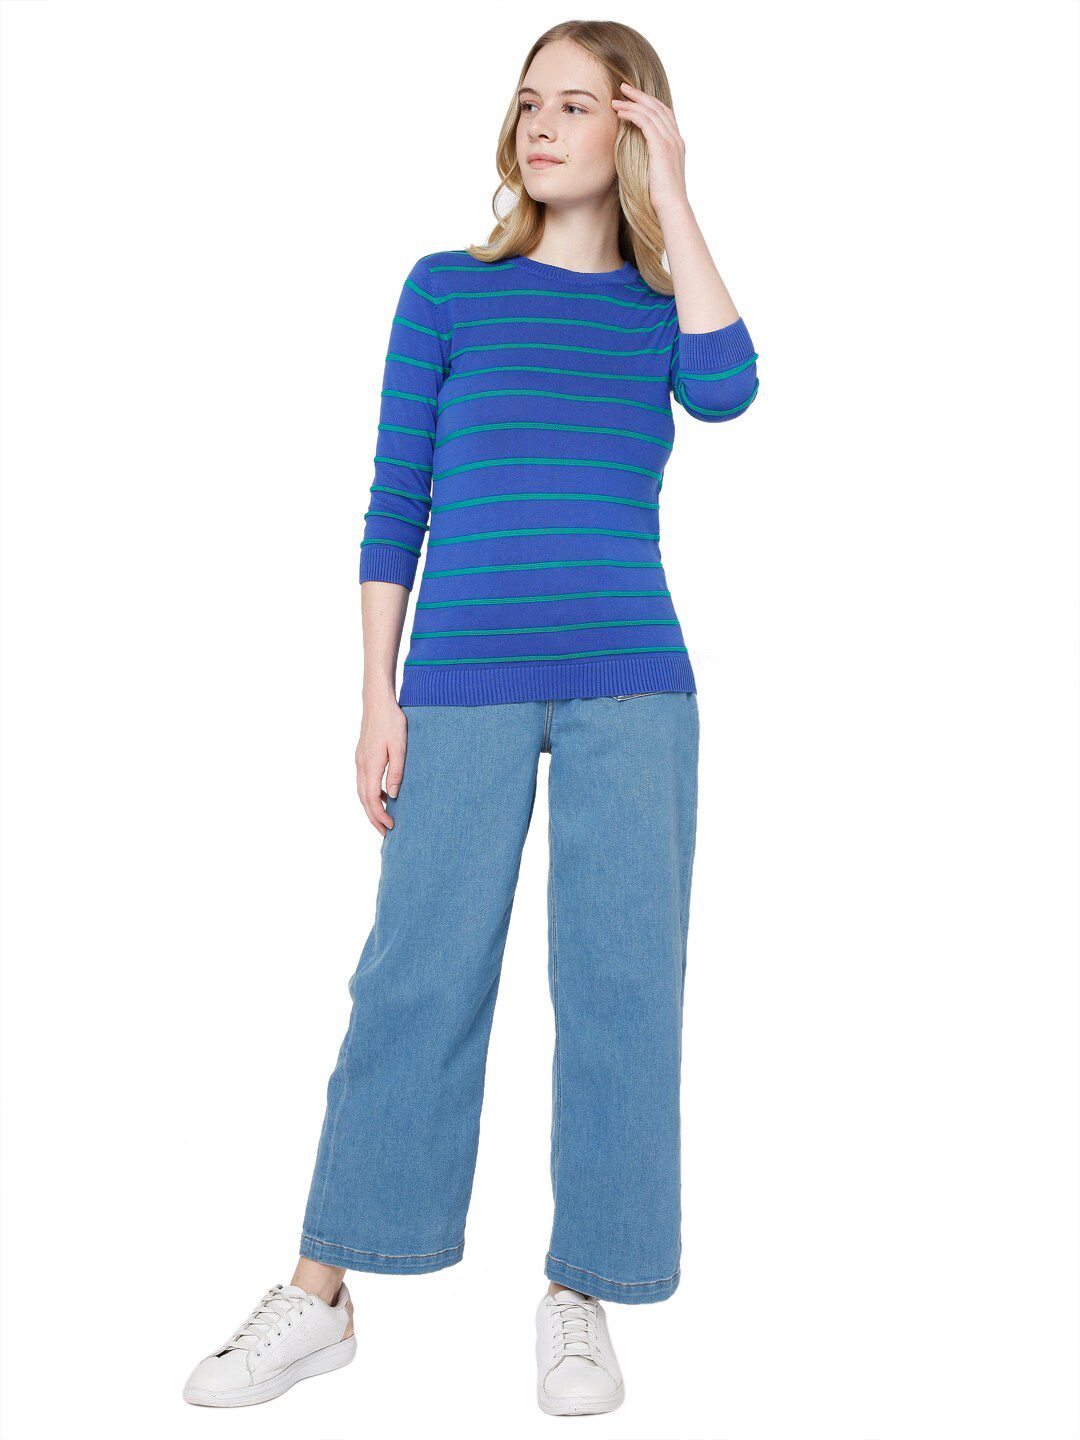 Vero Moda Women Blue & Green Striped Pullover Price in India